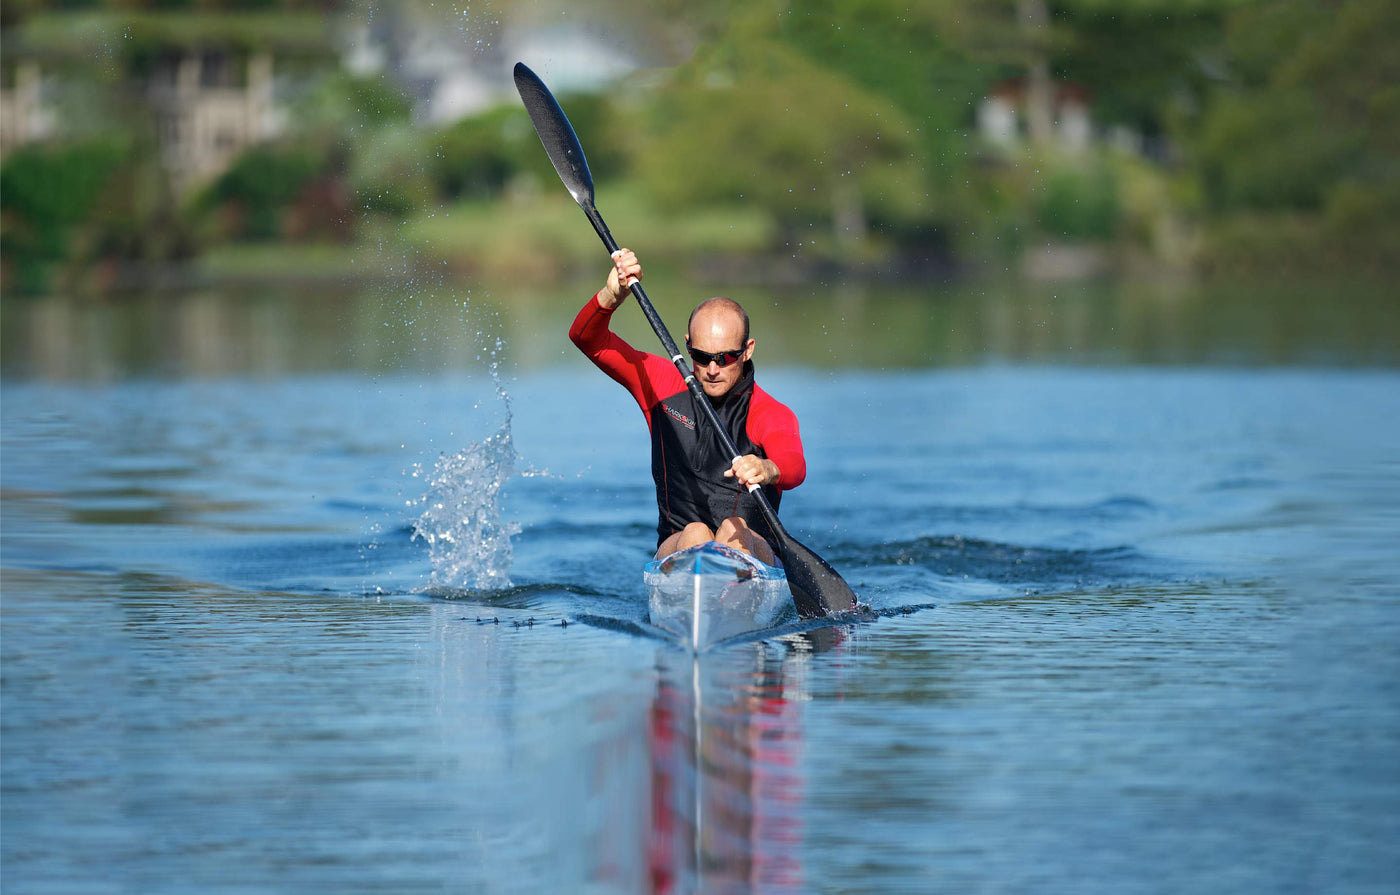 Kayaking wearing Sharkskin Performance